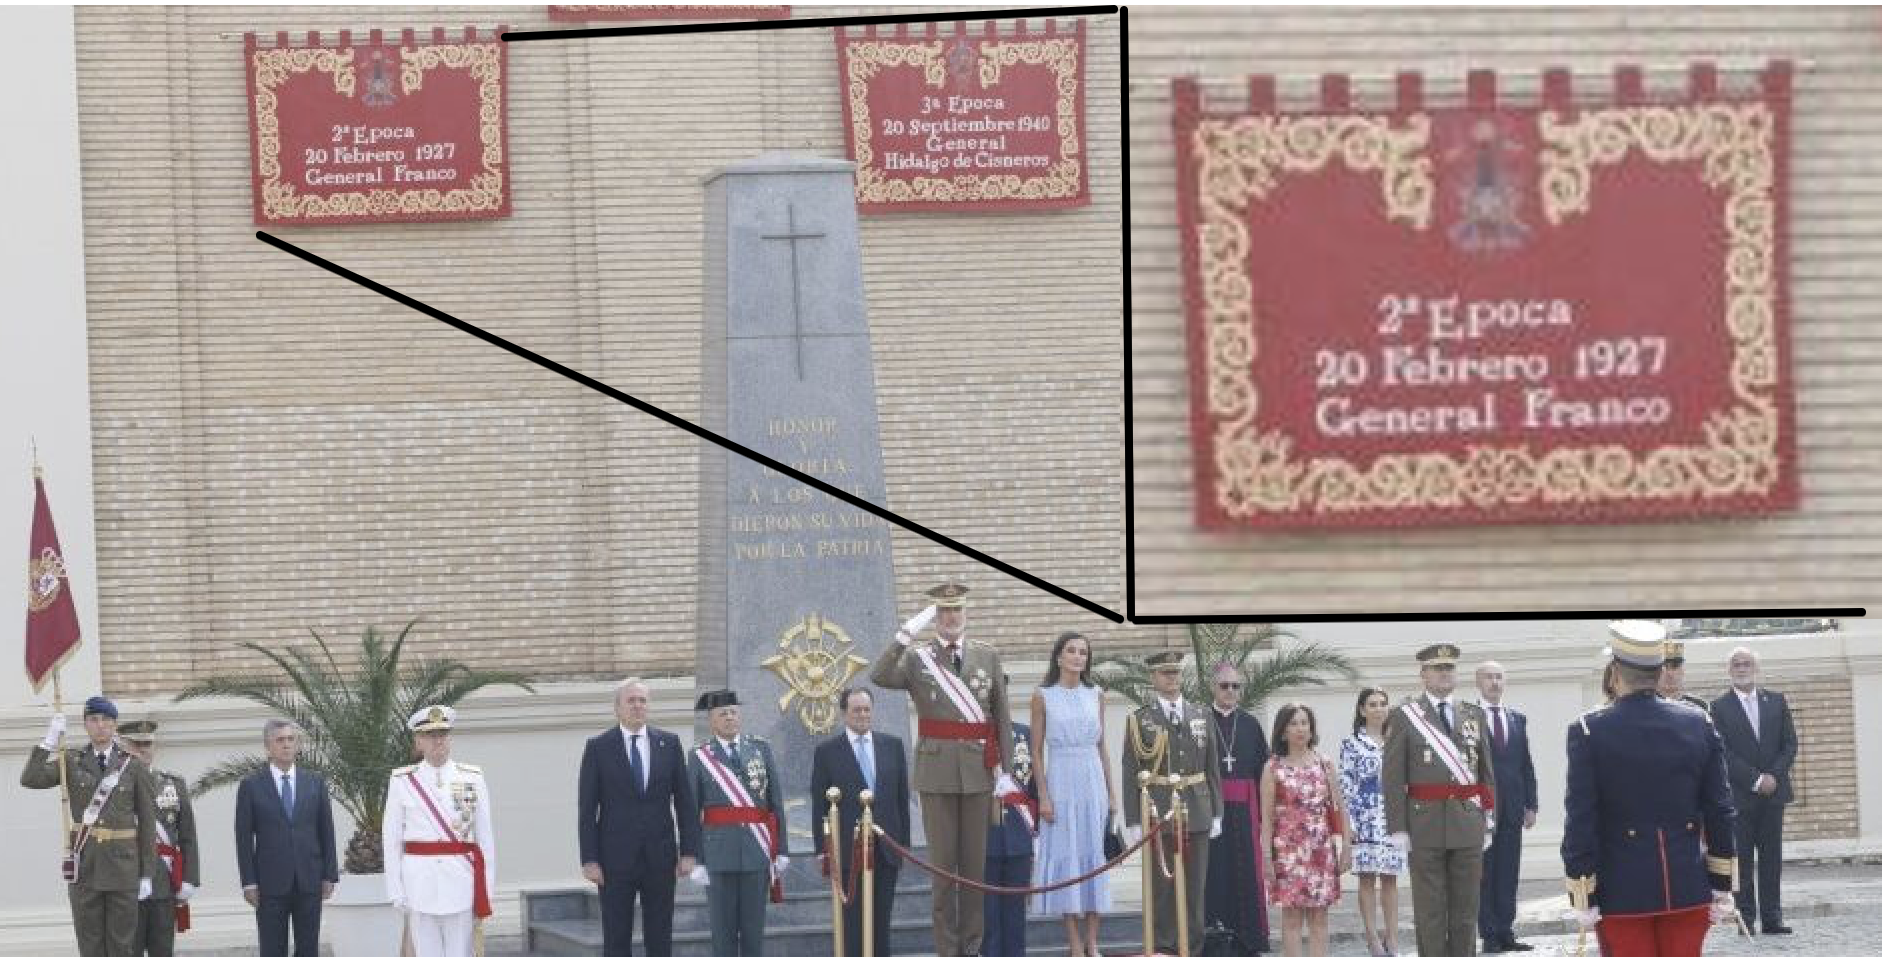 Protocolo de la Casa Real permitió la jura de bandera de Leonor bajo un tapiz franquista